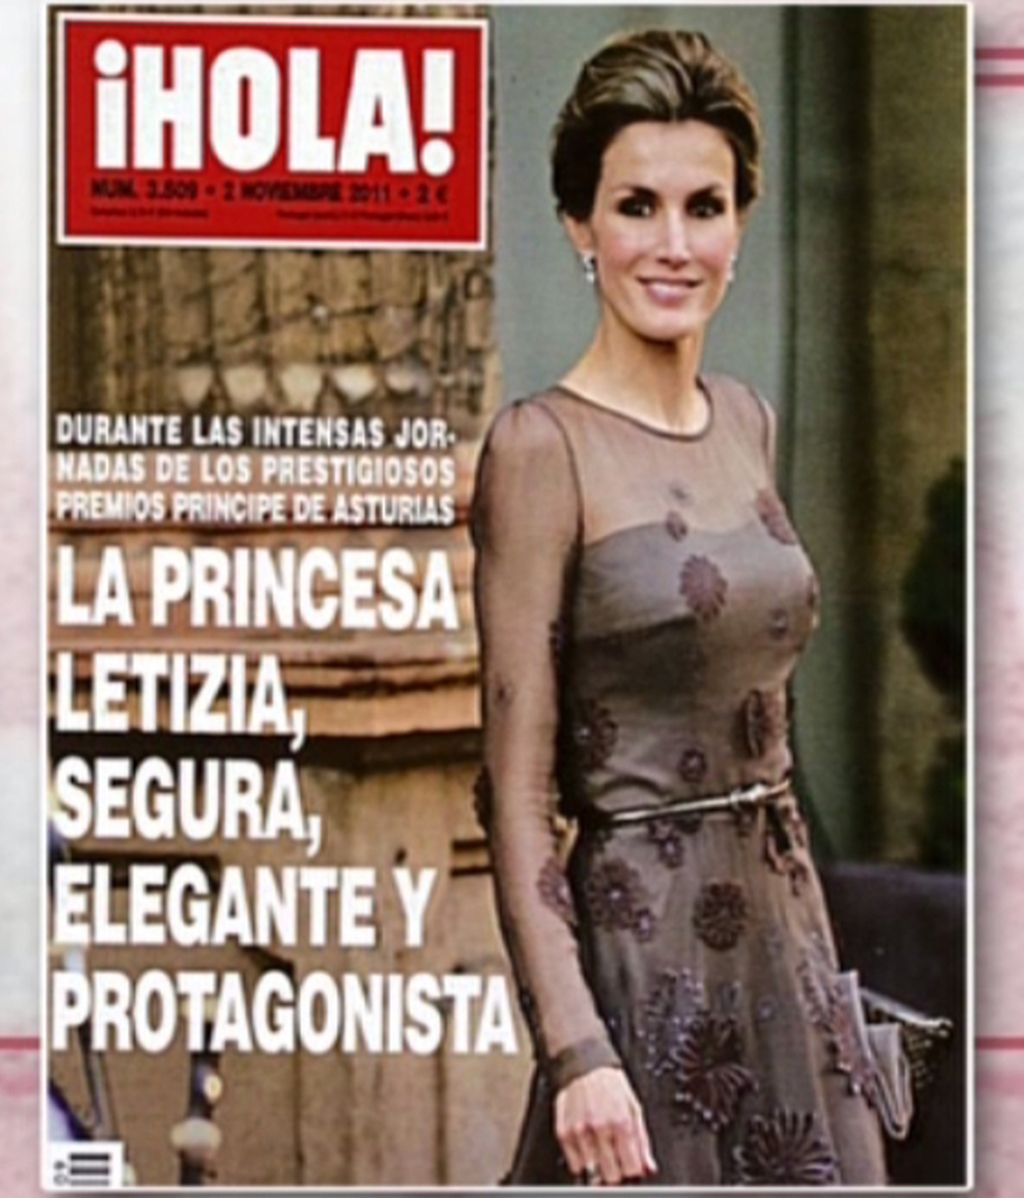 Doña Letizia, espectacular en los premios Príncipe de Asturias